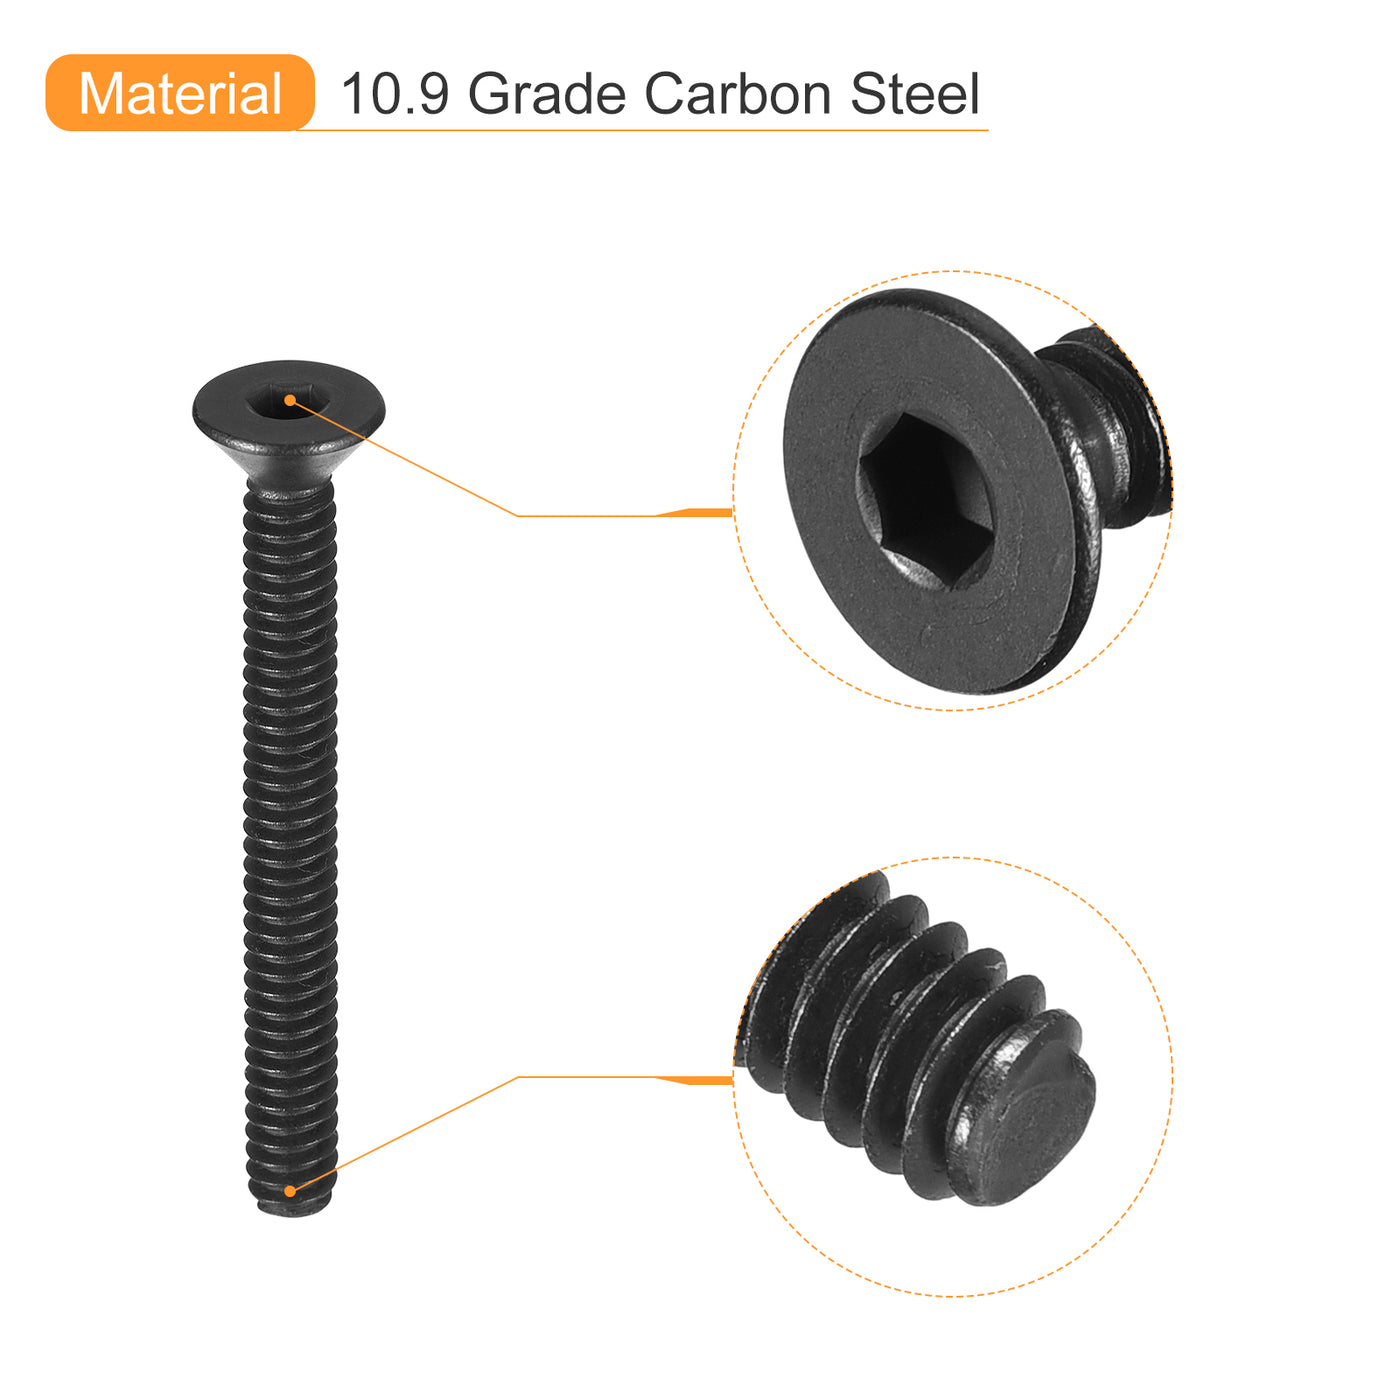 uxcell Uxcell #4-40x1" Flat Head Socket Cap Screws, 10.9 Grade Carbon, Black, 10pcs